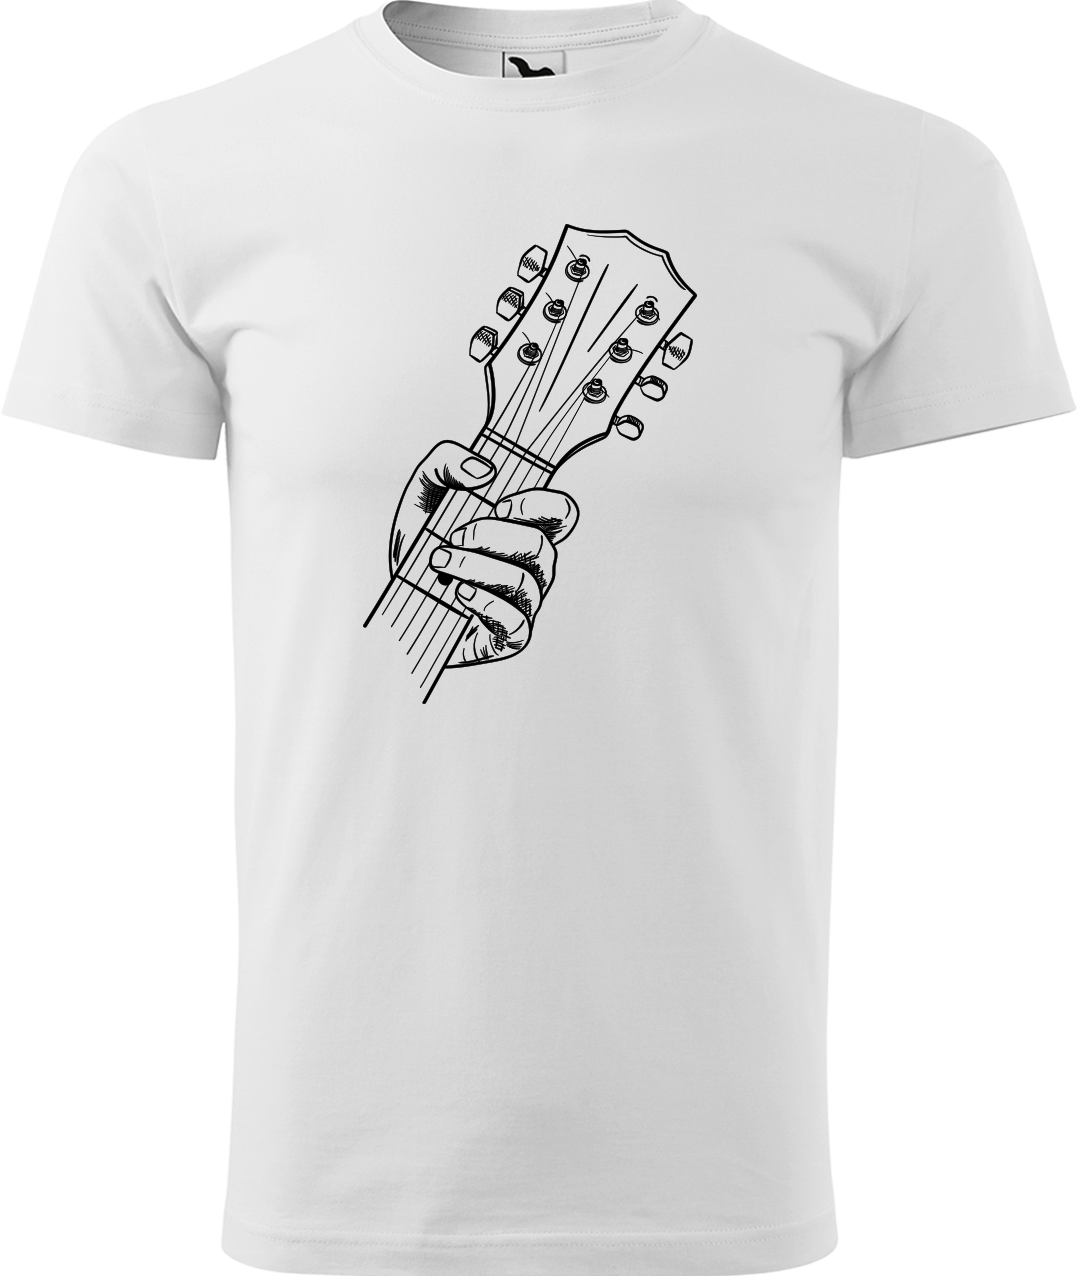 Pánské tričko s kytarou - Hlava kytary Velikost: L, Barva: Bílá (00)